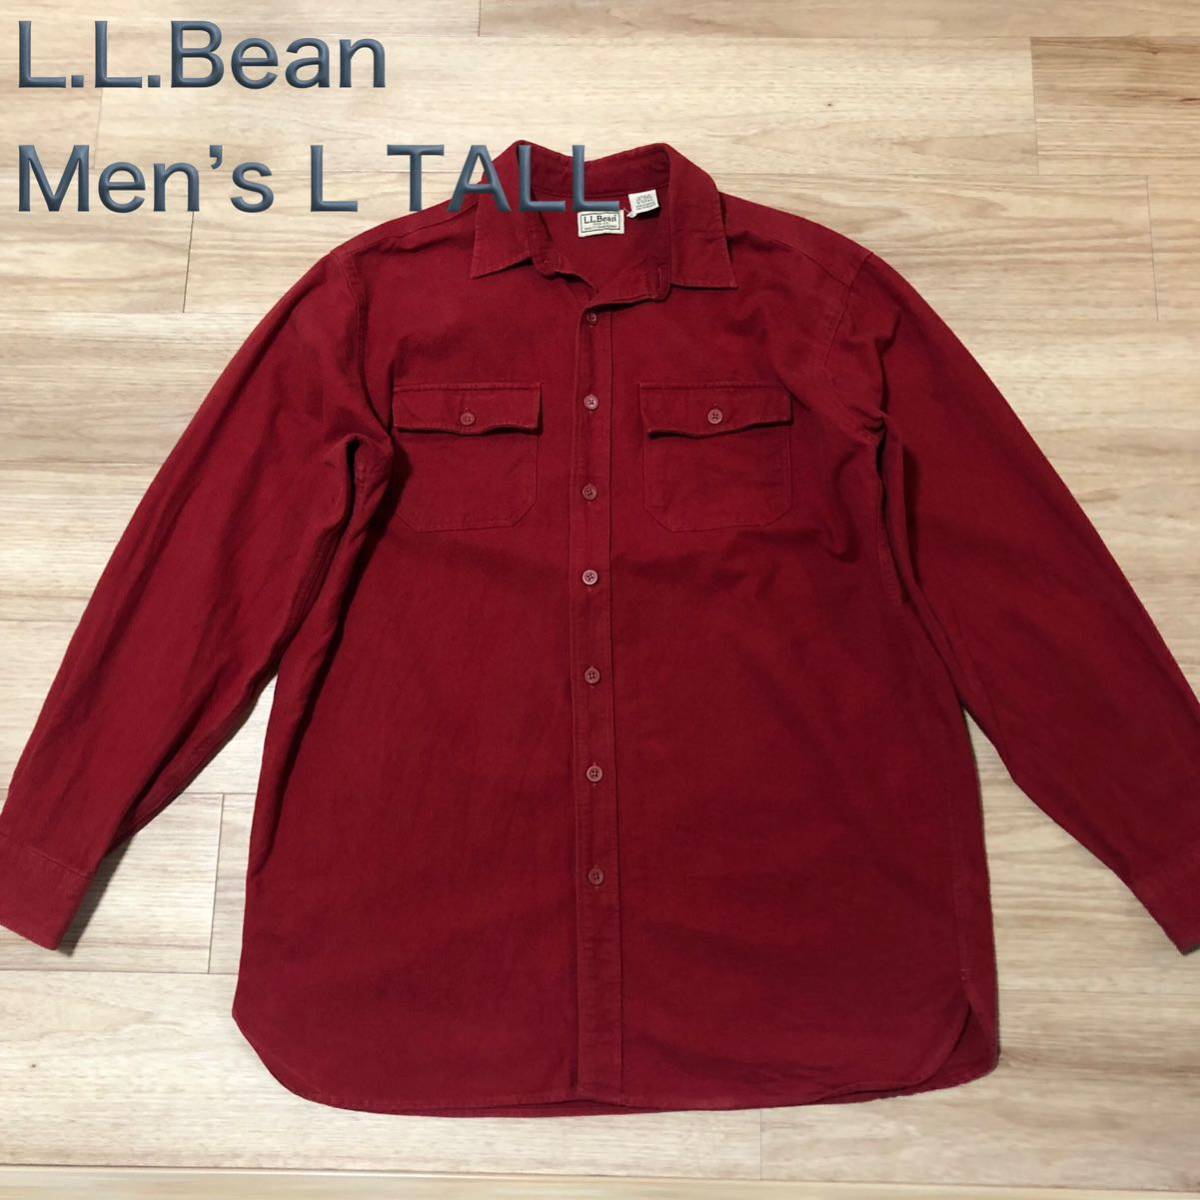 【送料無料】メキシコ製L.L.Beanやや厚手コットン長袖シャツ赤　メンズL TALLサイズ　エルエルビーンアウトドア登山